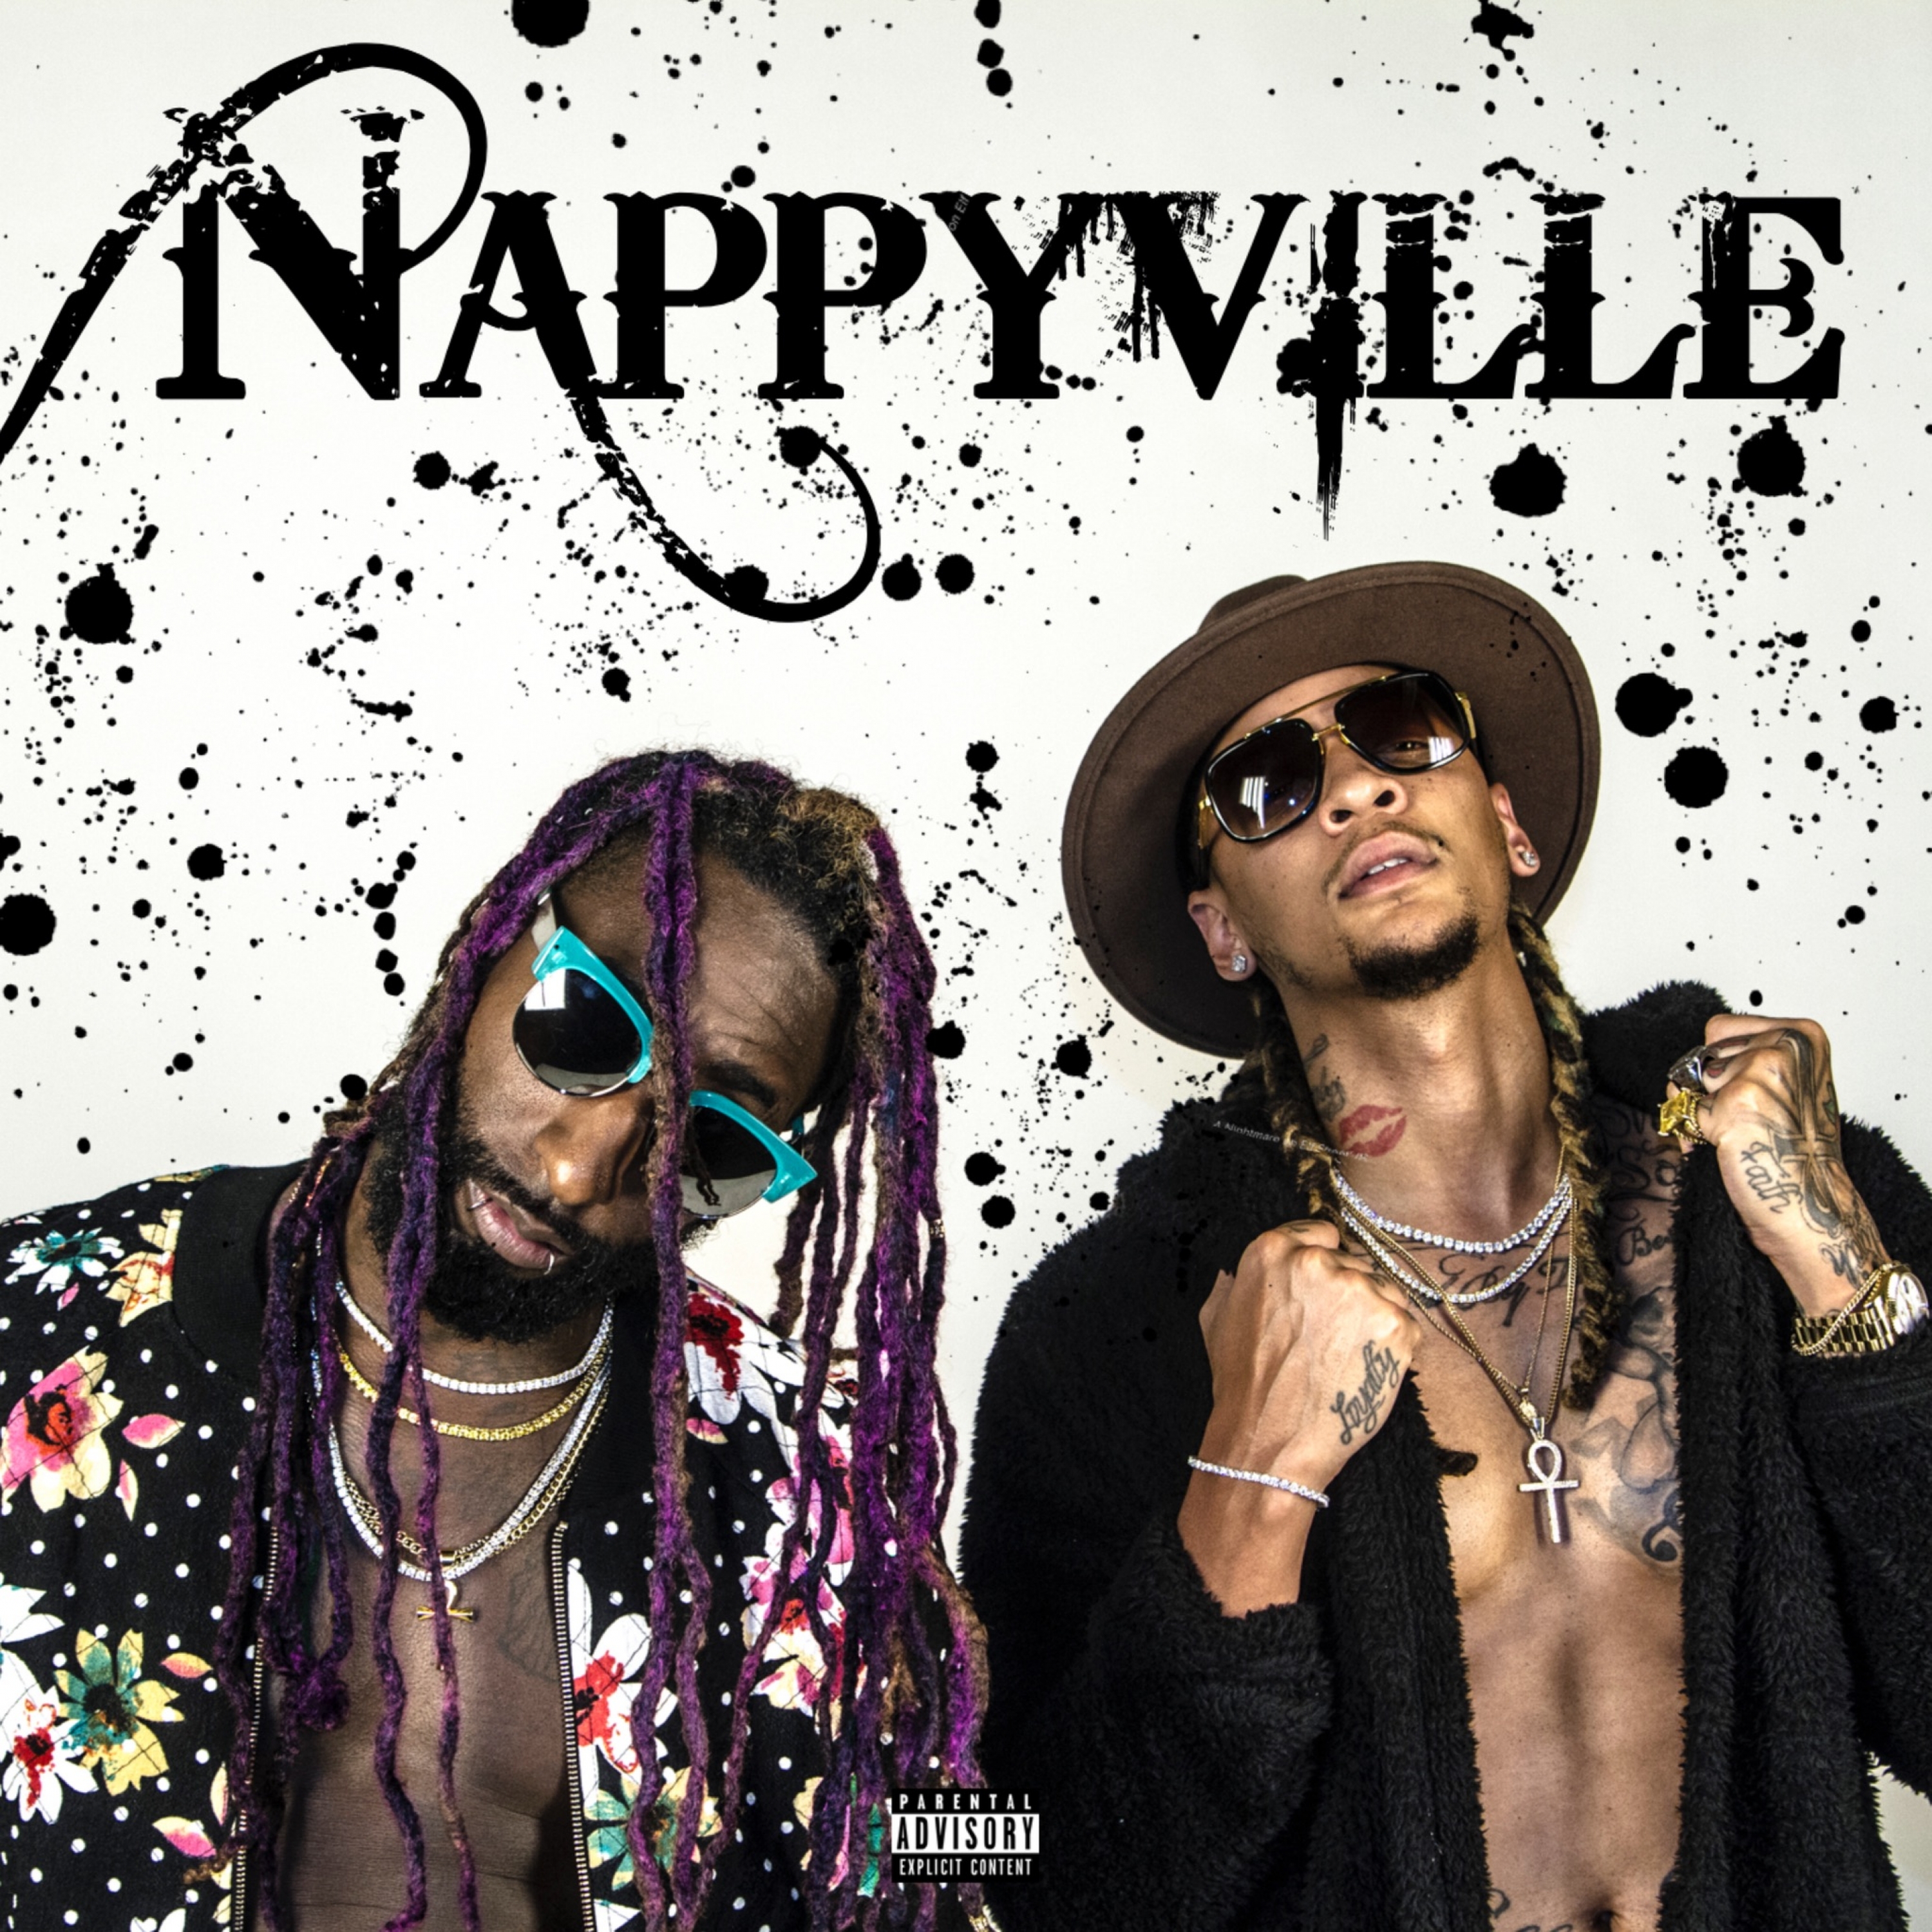 Nappyville